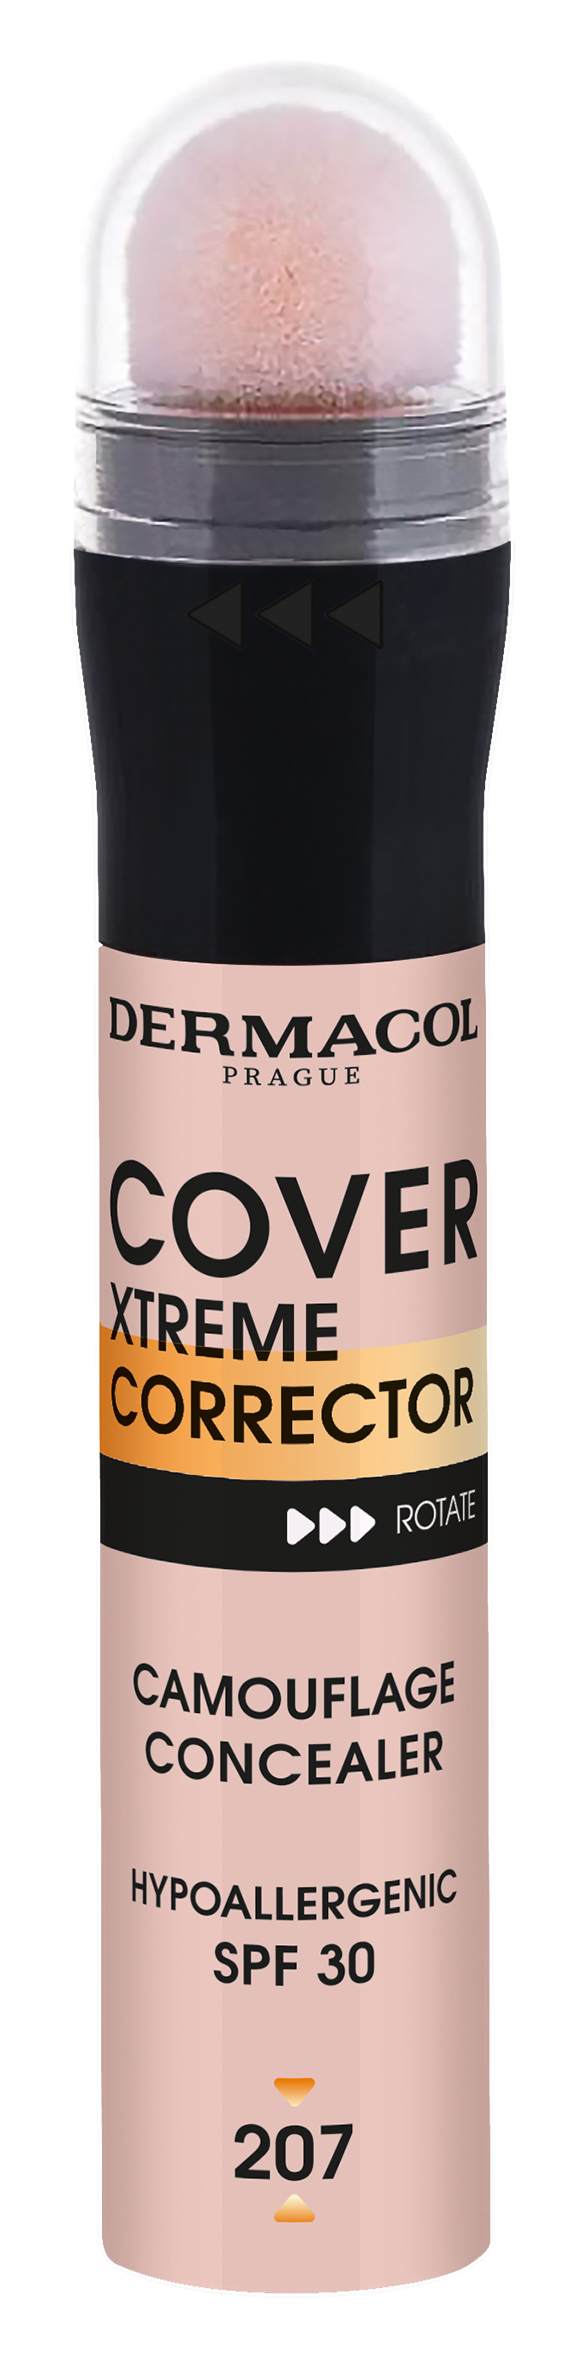 Dermacol Vysoce krycí korektor Cover Xtreme SPF 30 (Camouflage Concealer) 8 g 2